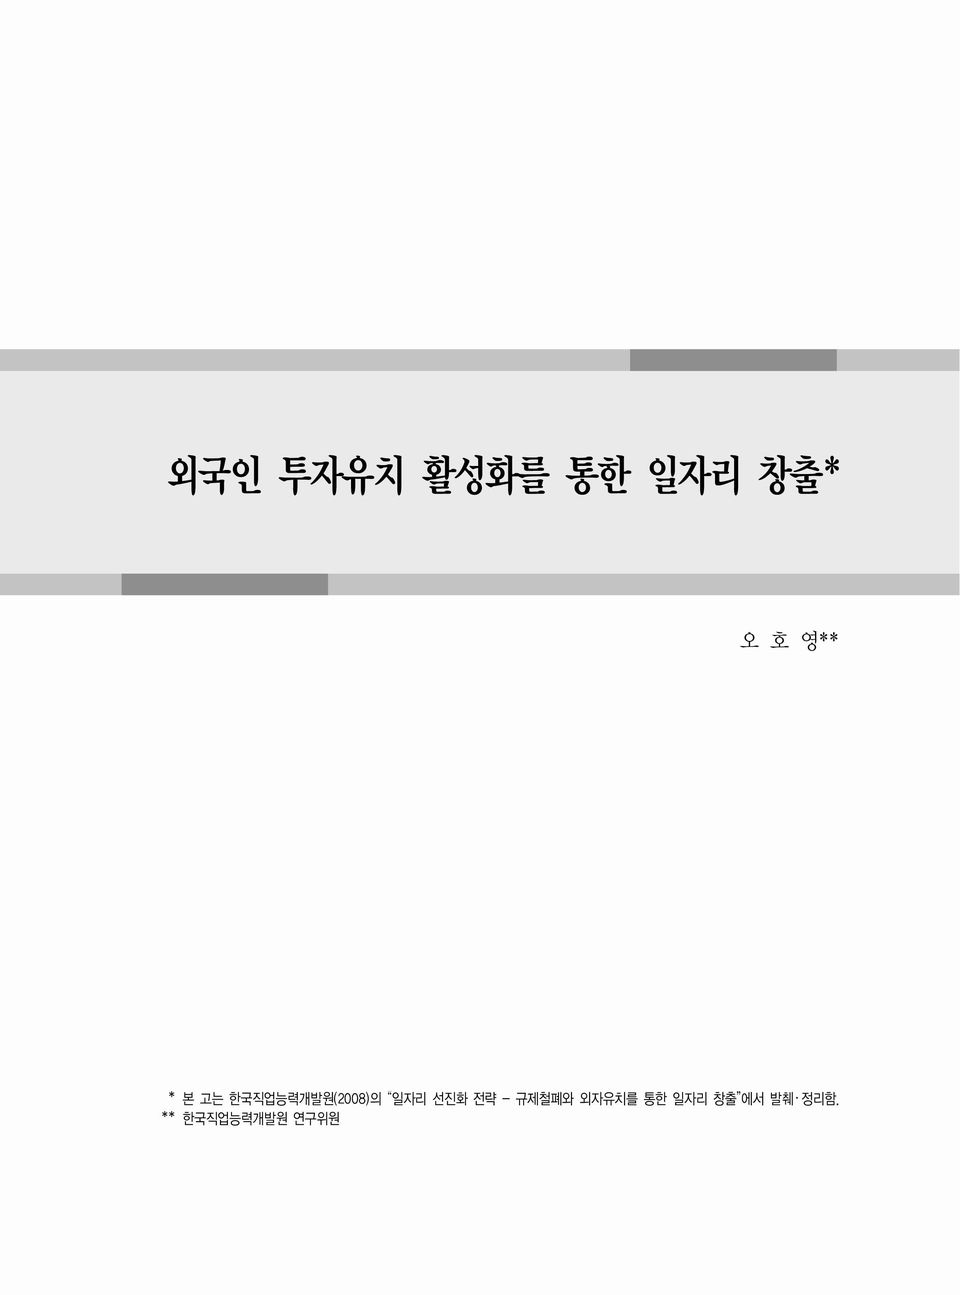 한국직업능력개발원(2008)의 일자리 선진화 전략 - 규제철폐와